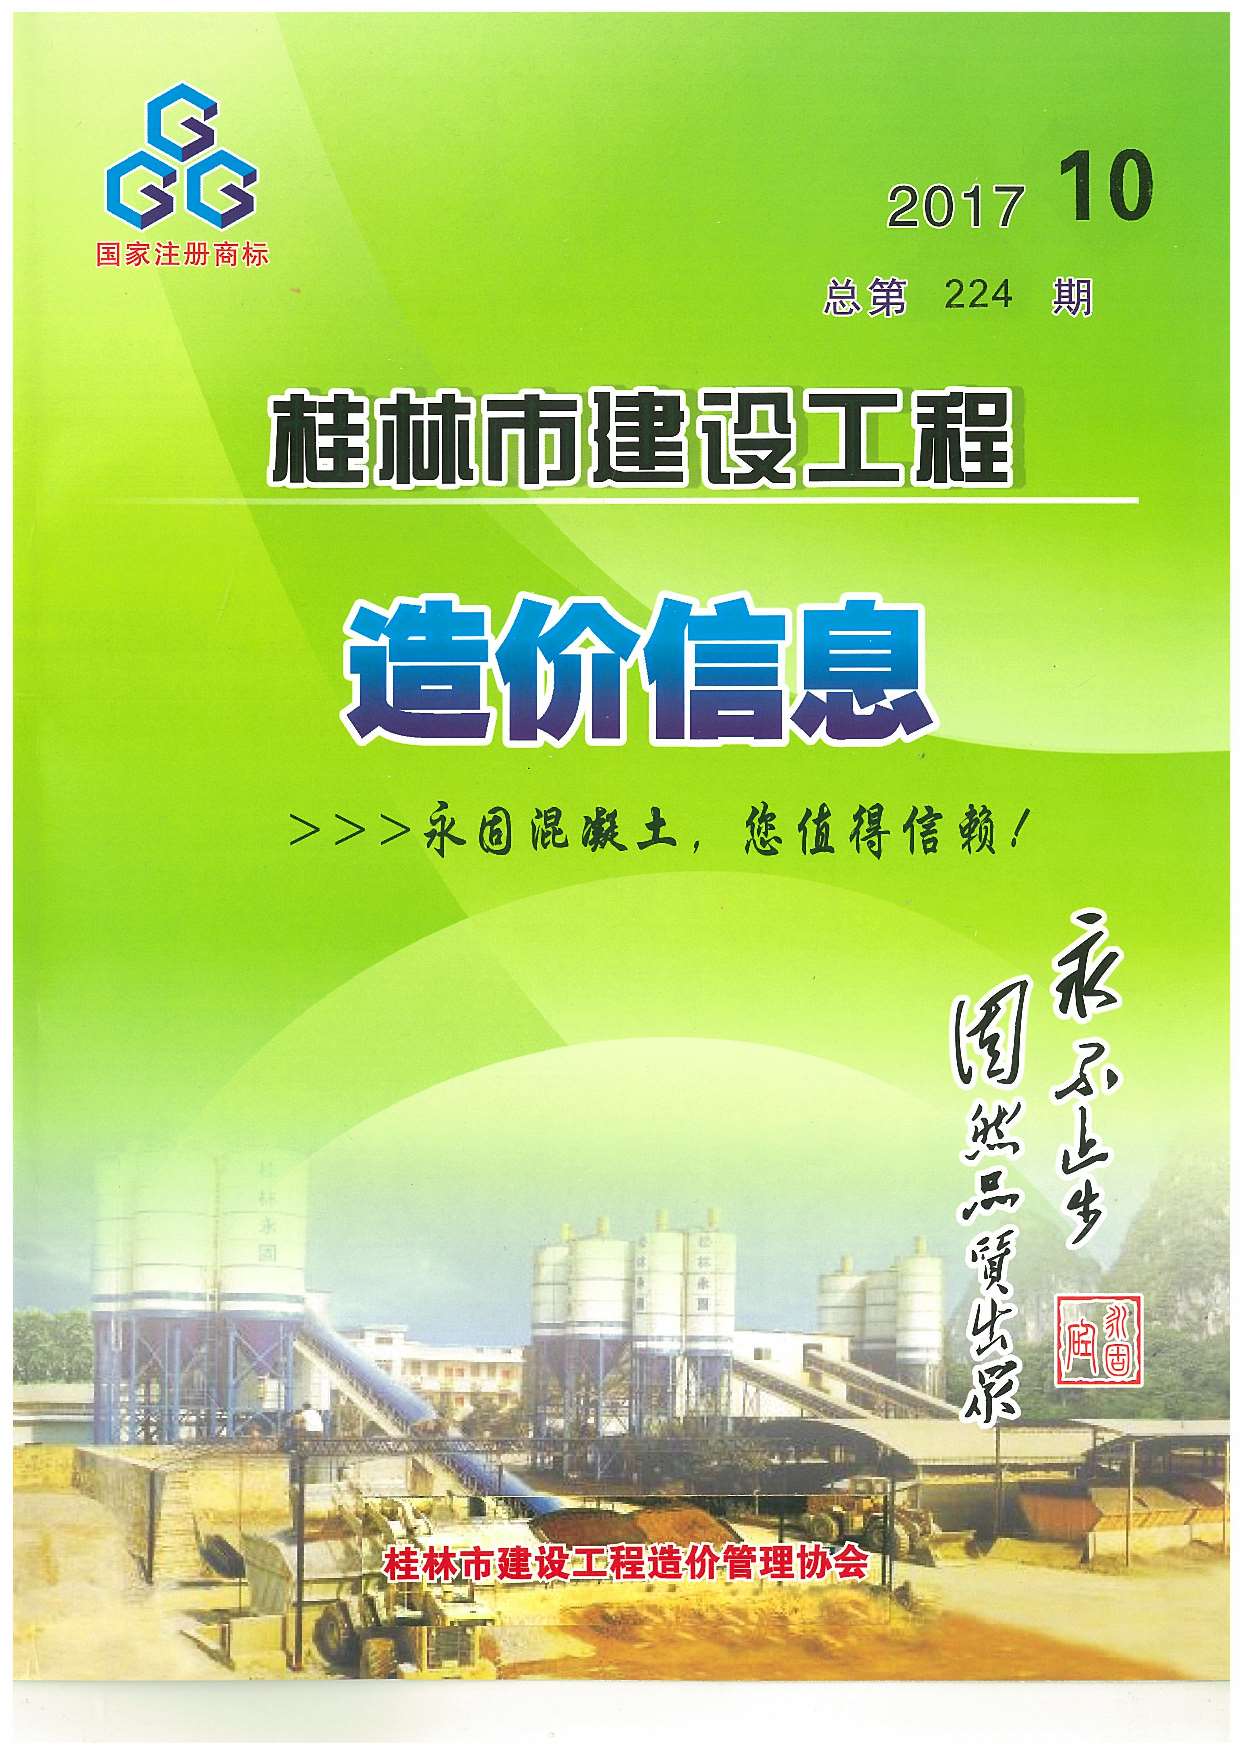 桂林市2017年10月建设工程造价信息造价库信息价